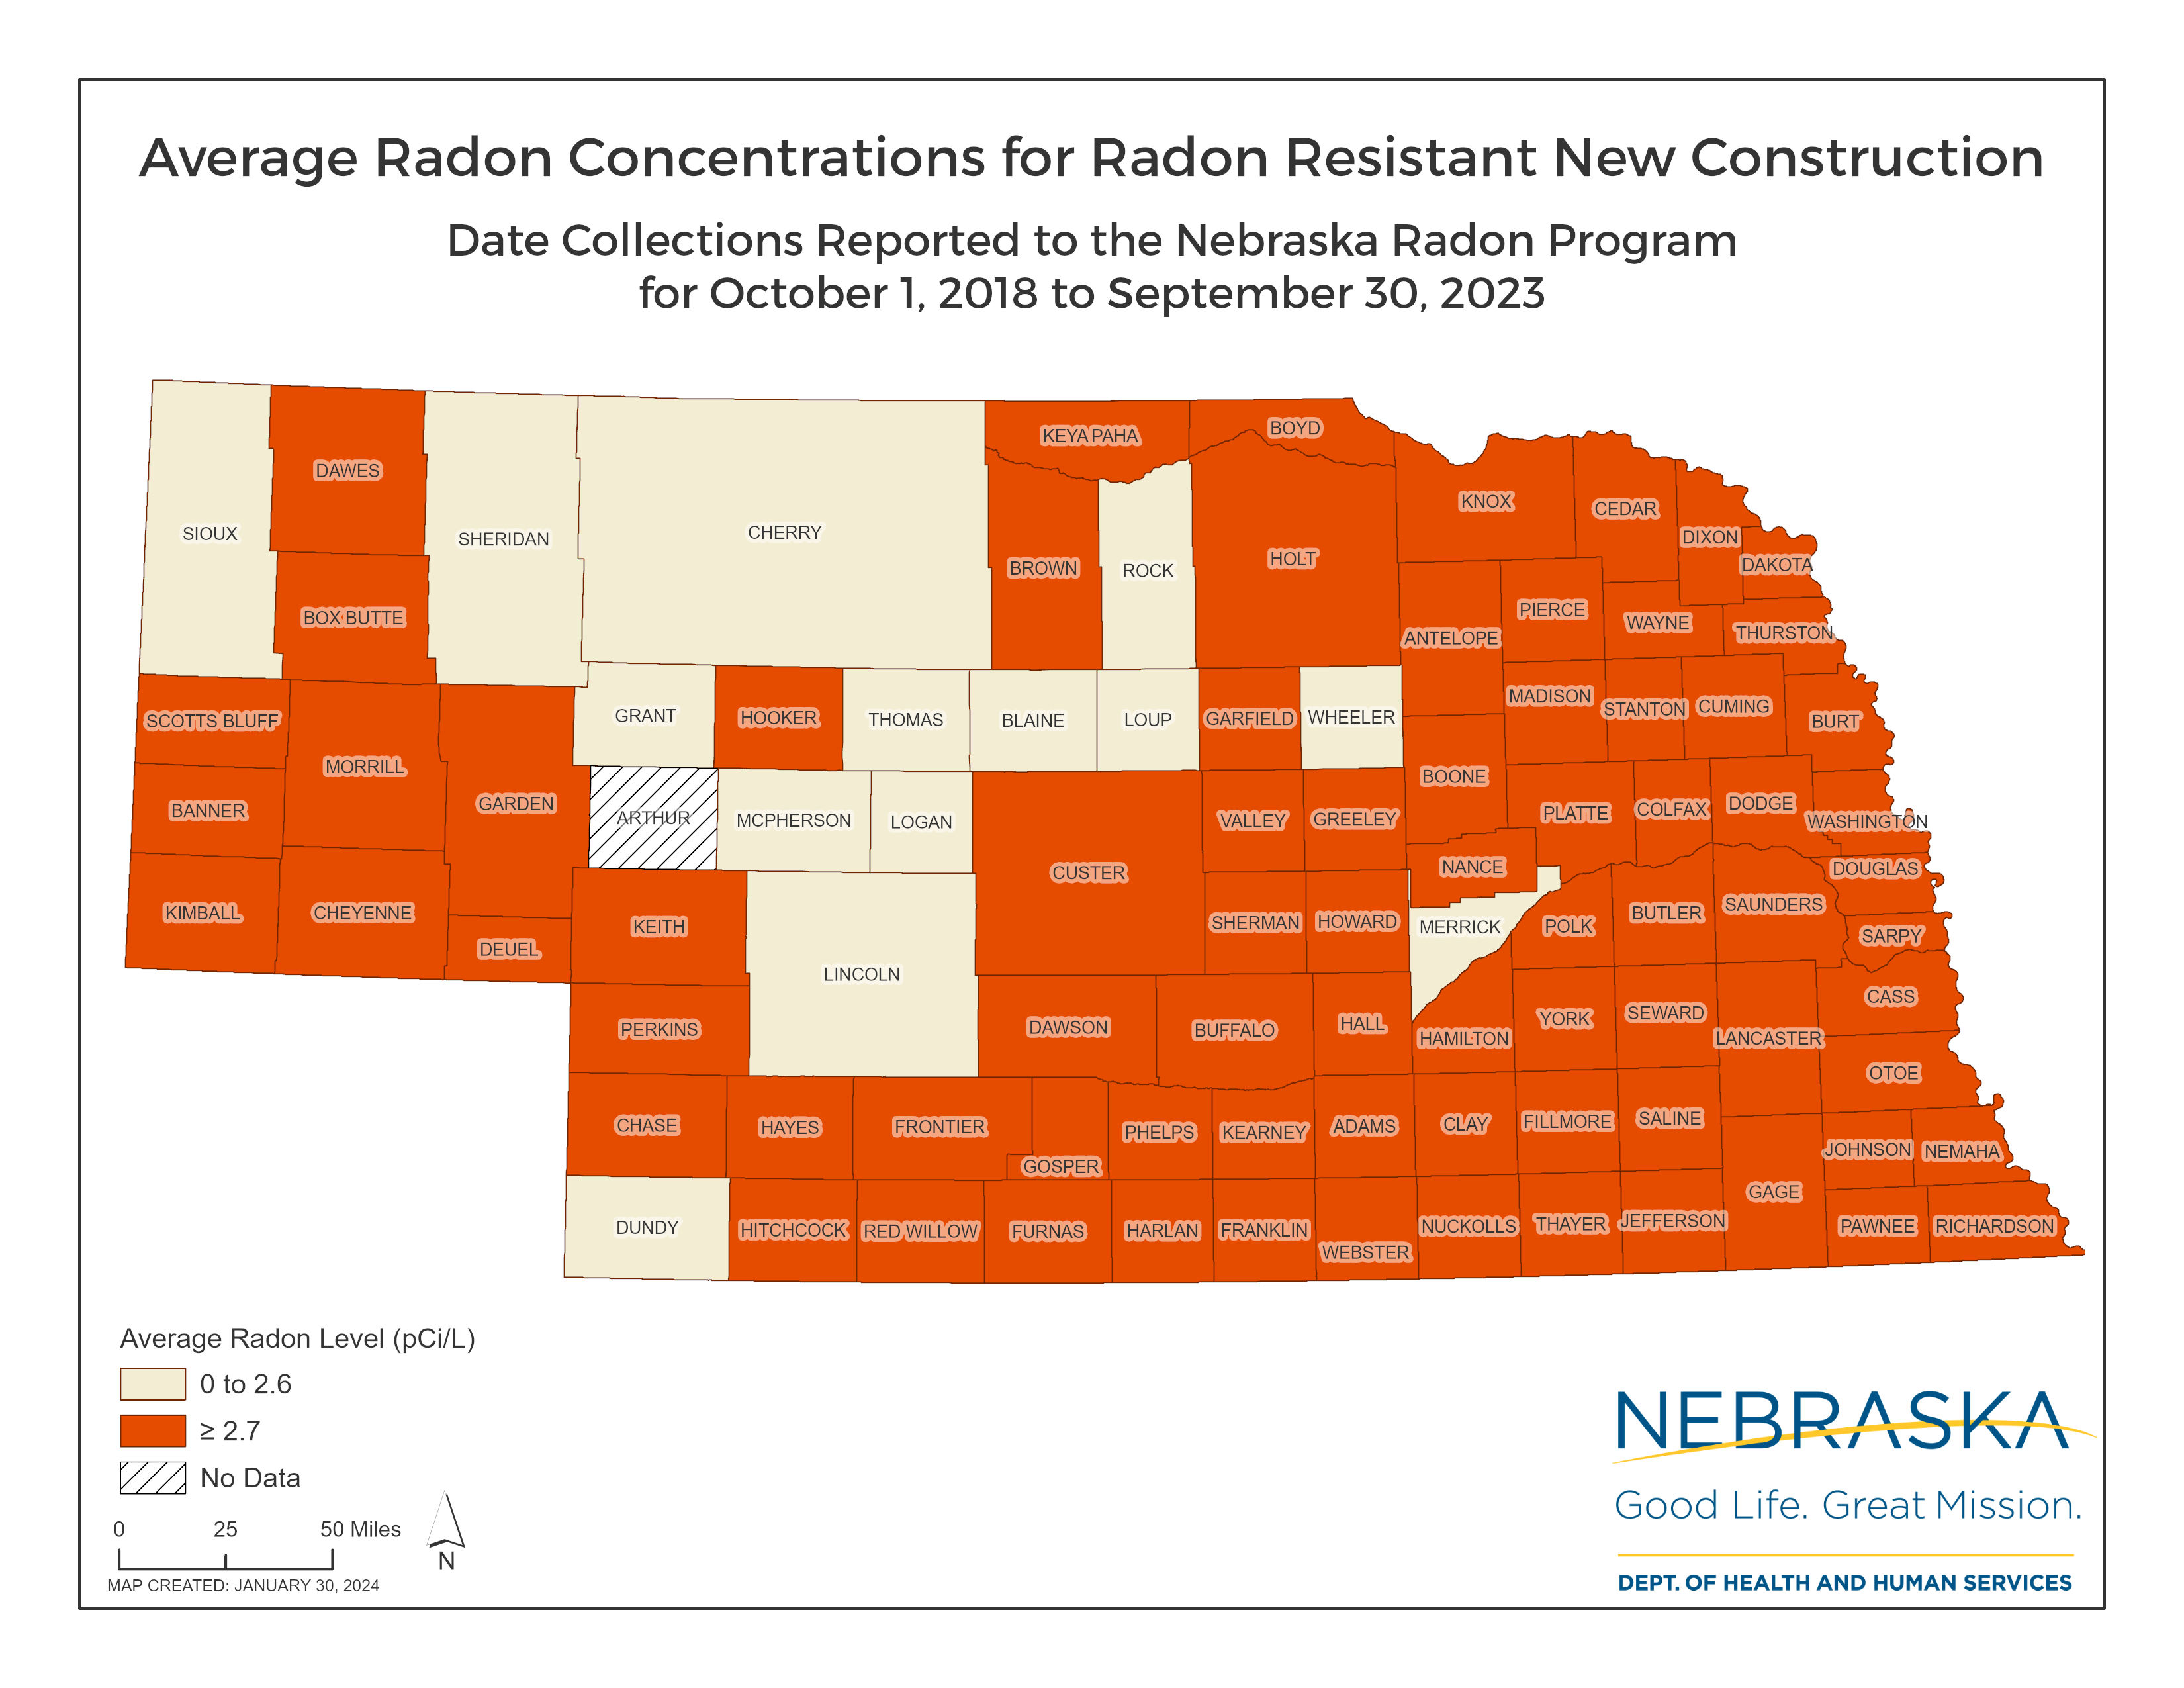 Average Radon Concentratios by  County